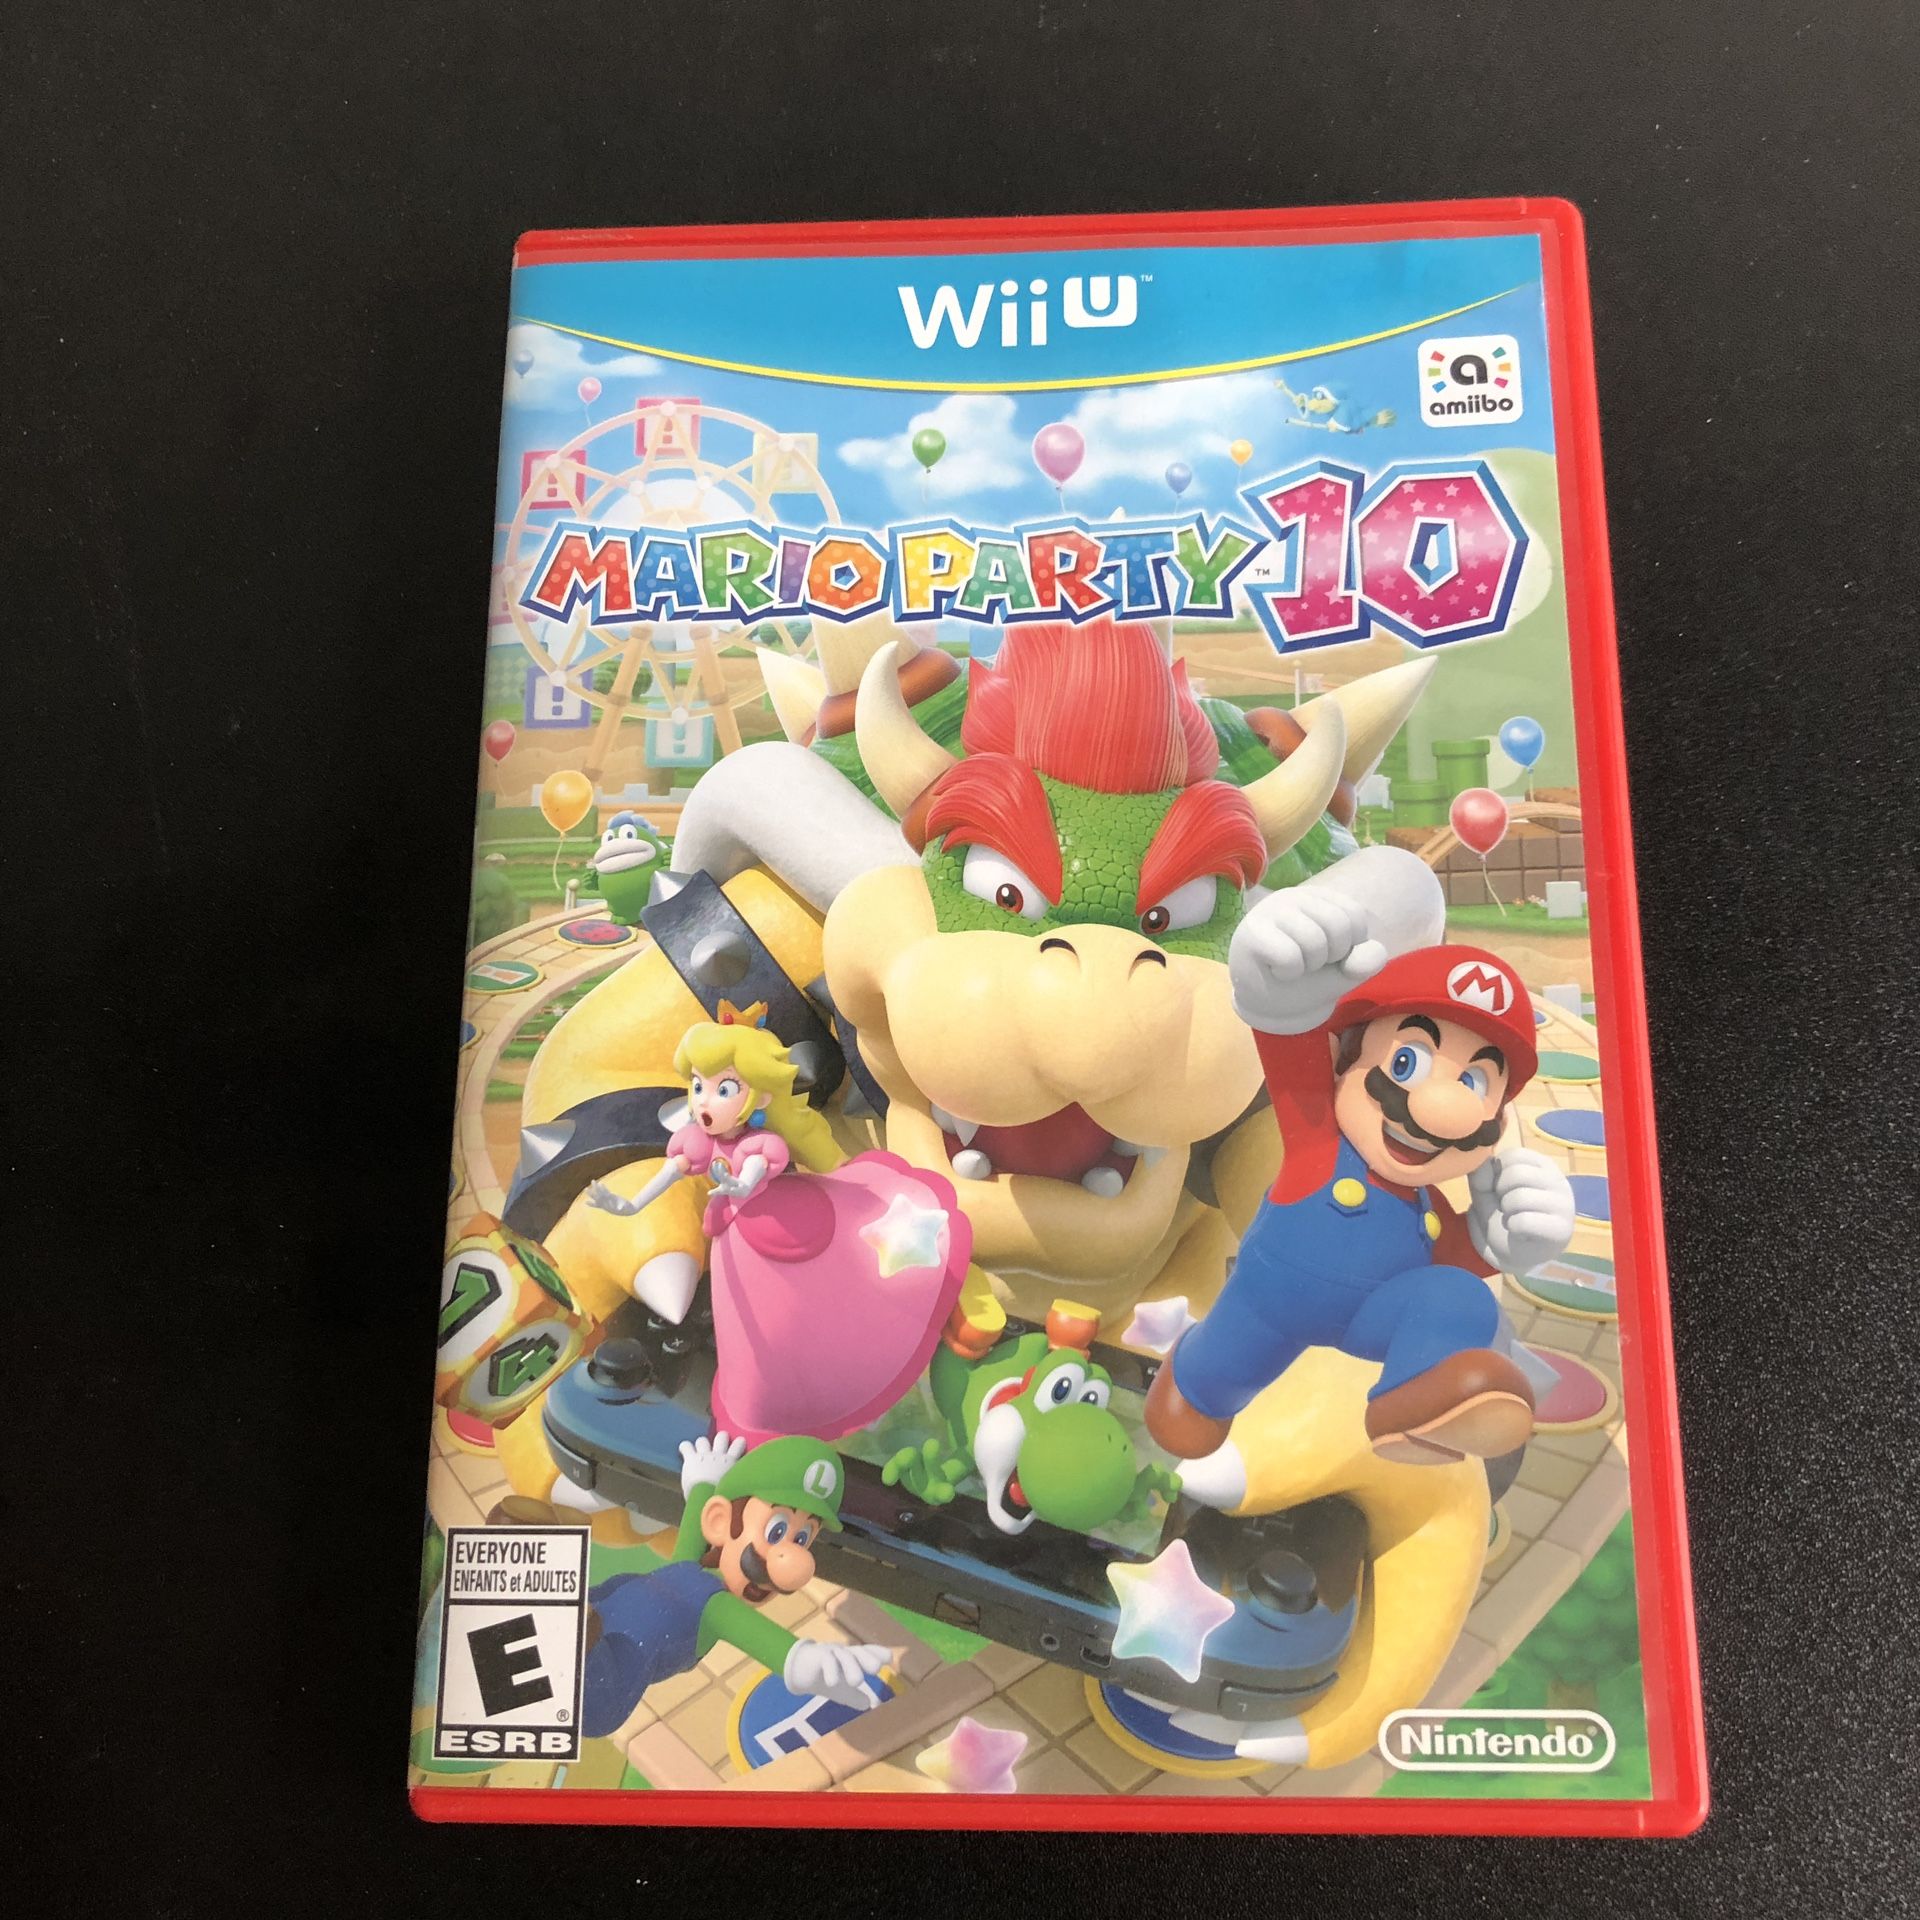 Mario party 10 Wii U